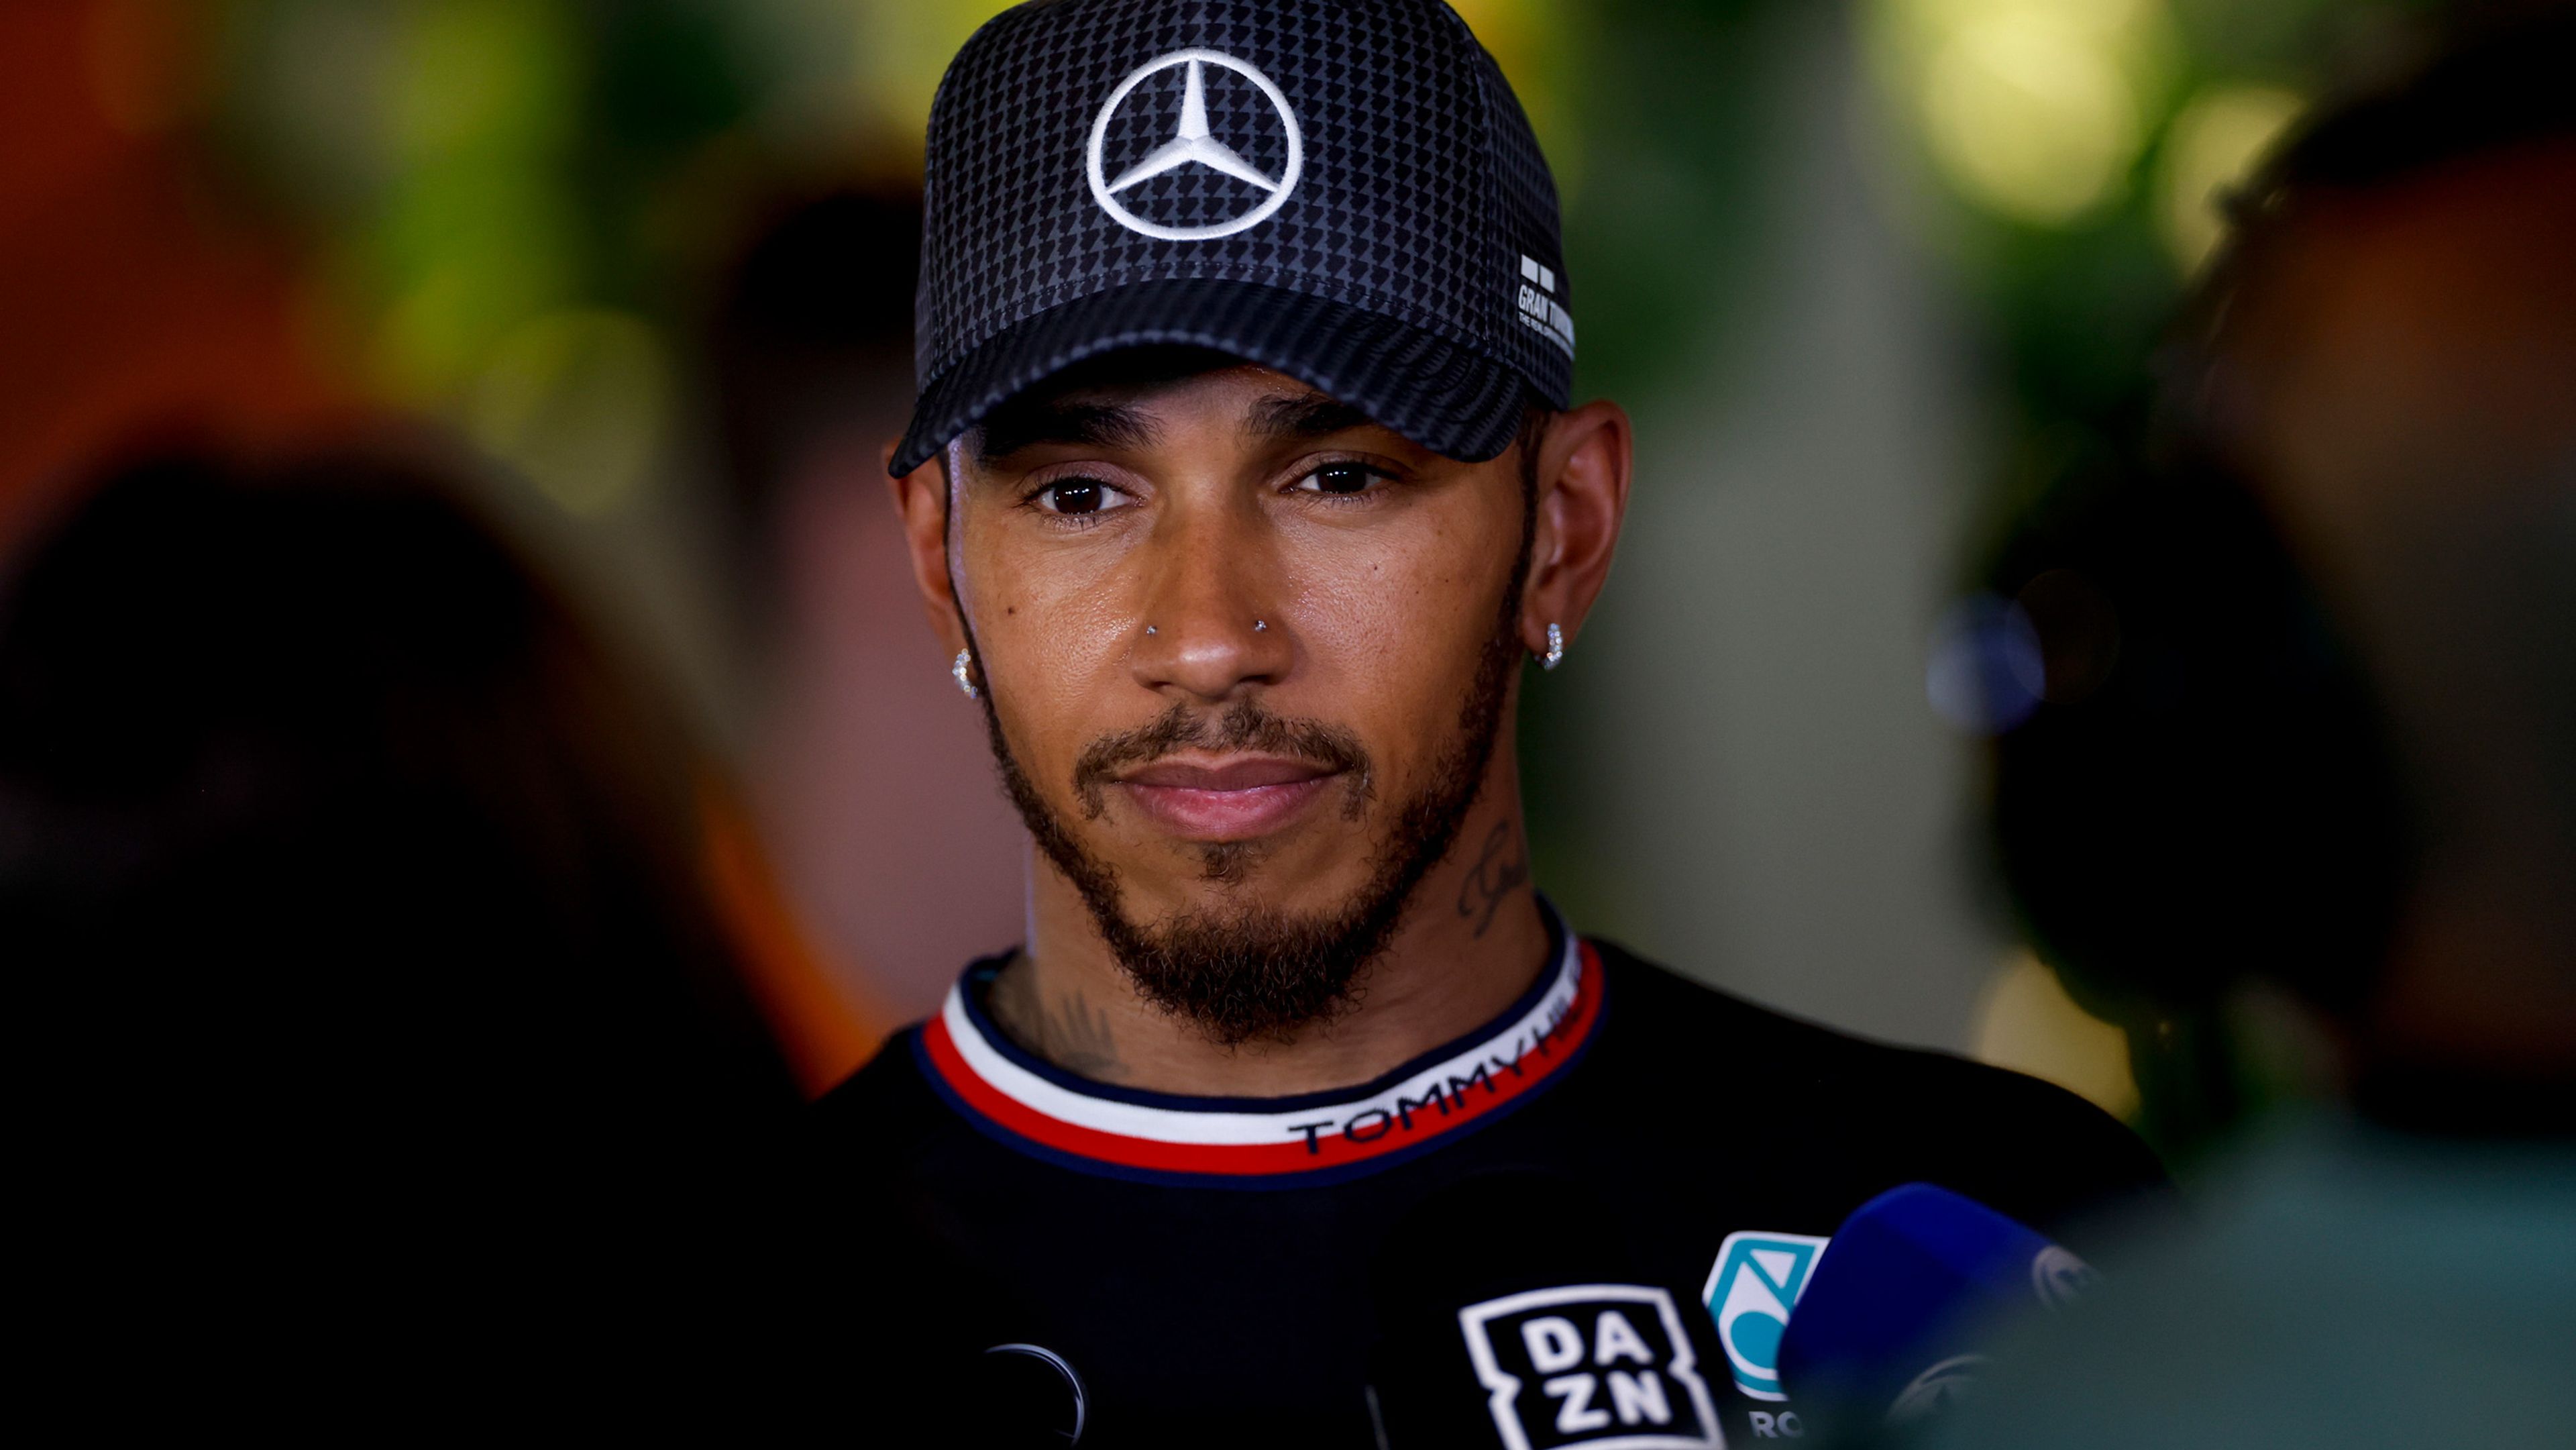 Lewis Hamilton en el GP de Arabia Saudí de Fórmula 1